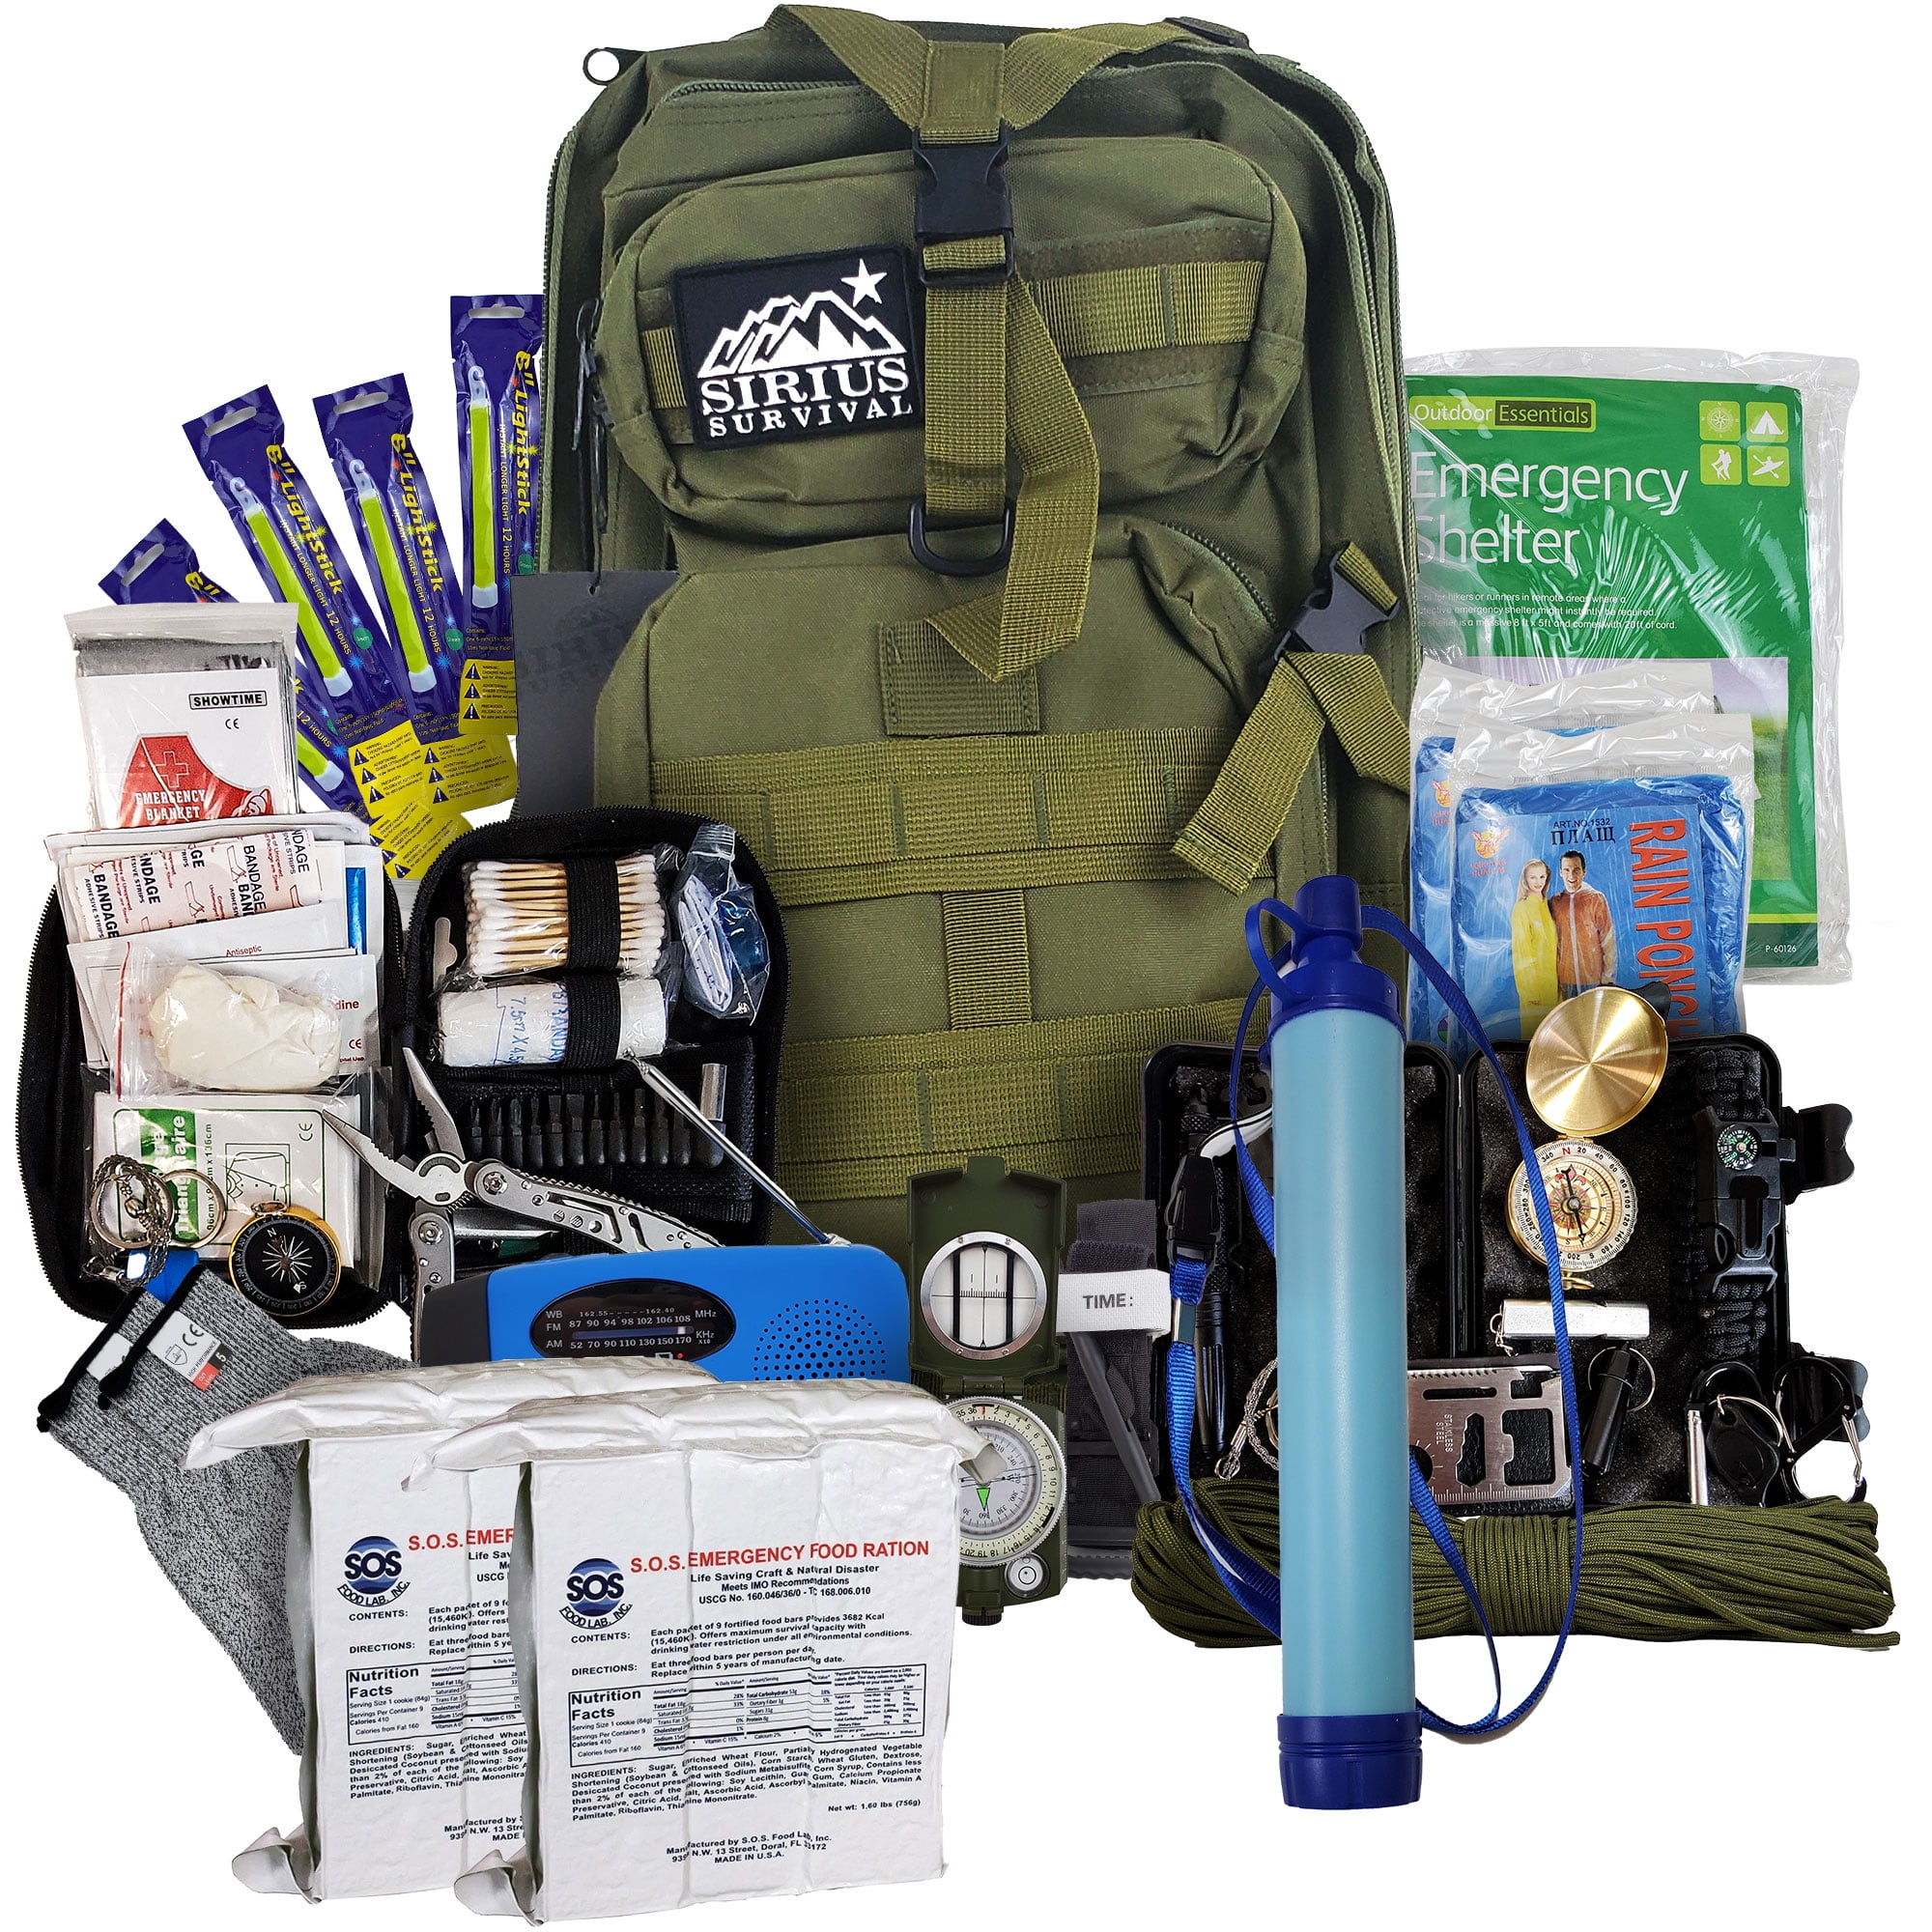 Vital 72 Hour Emergency Survival Kit for Family - Be Prepared for